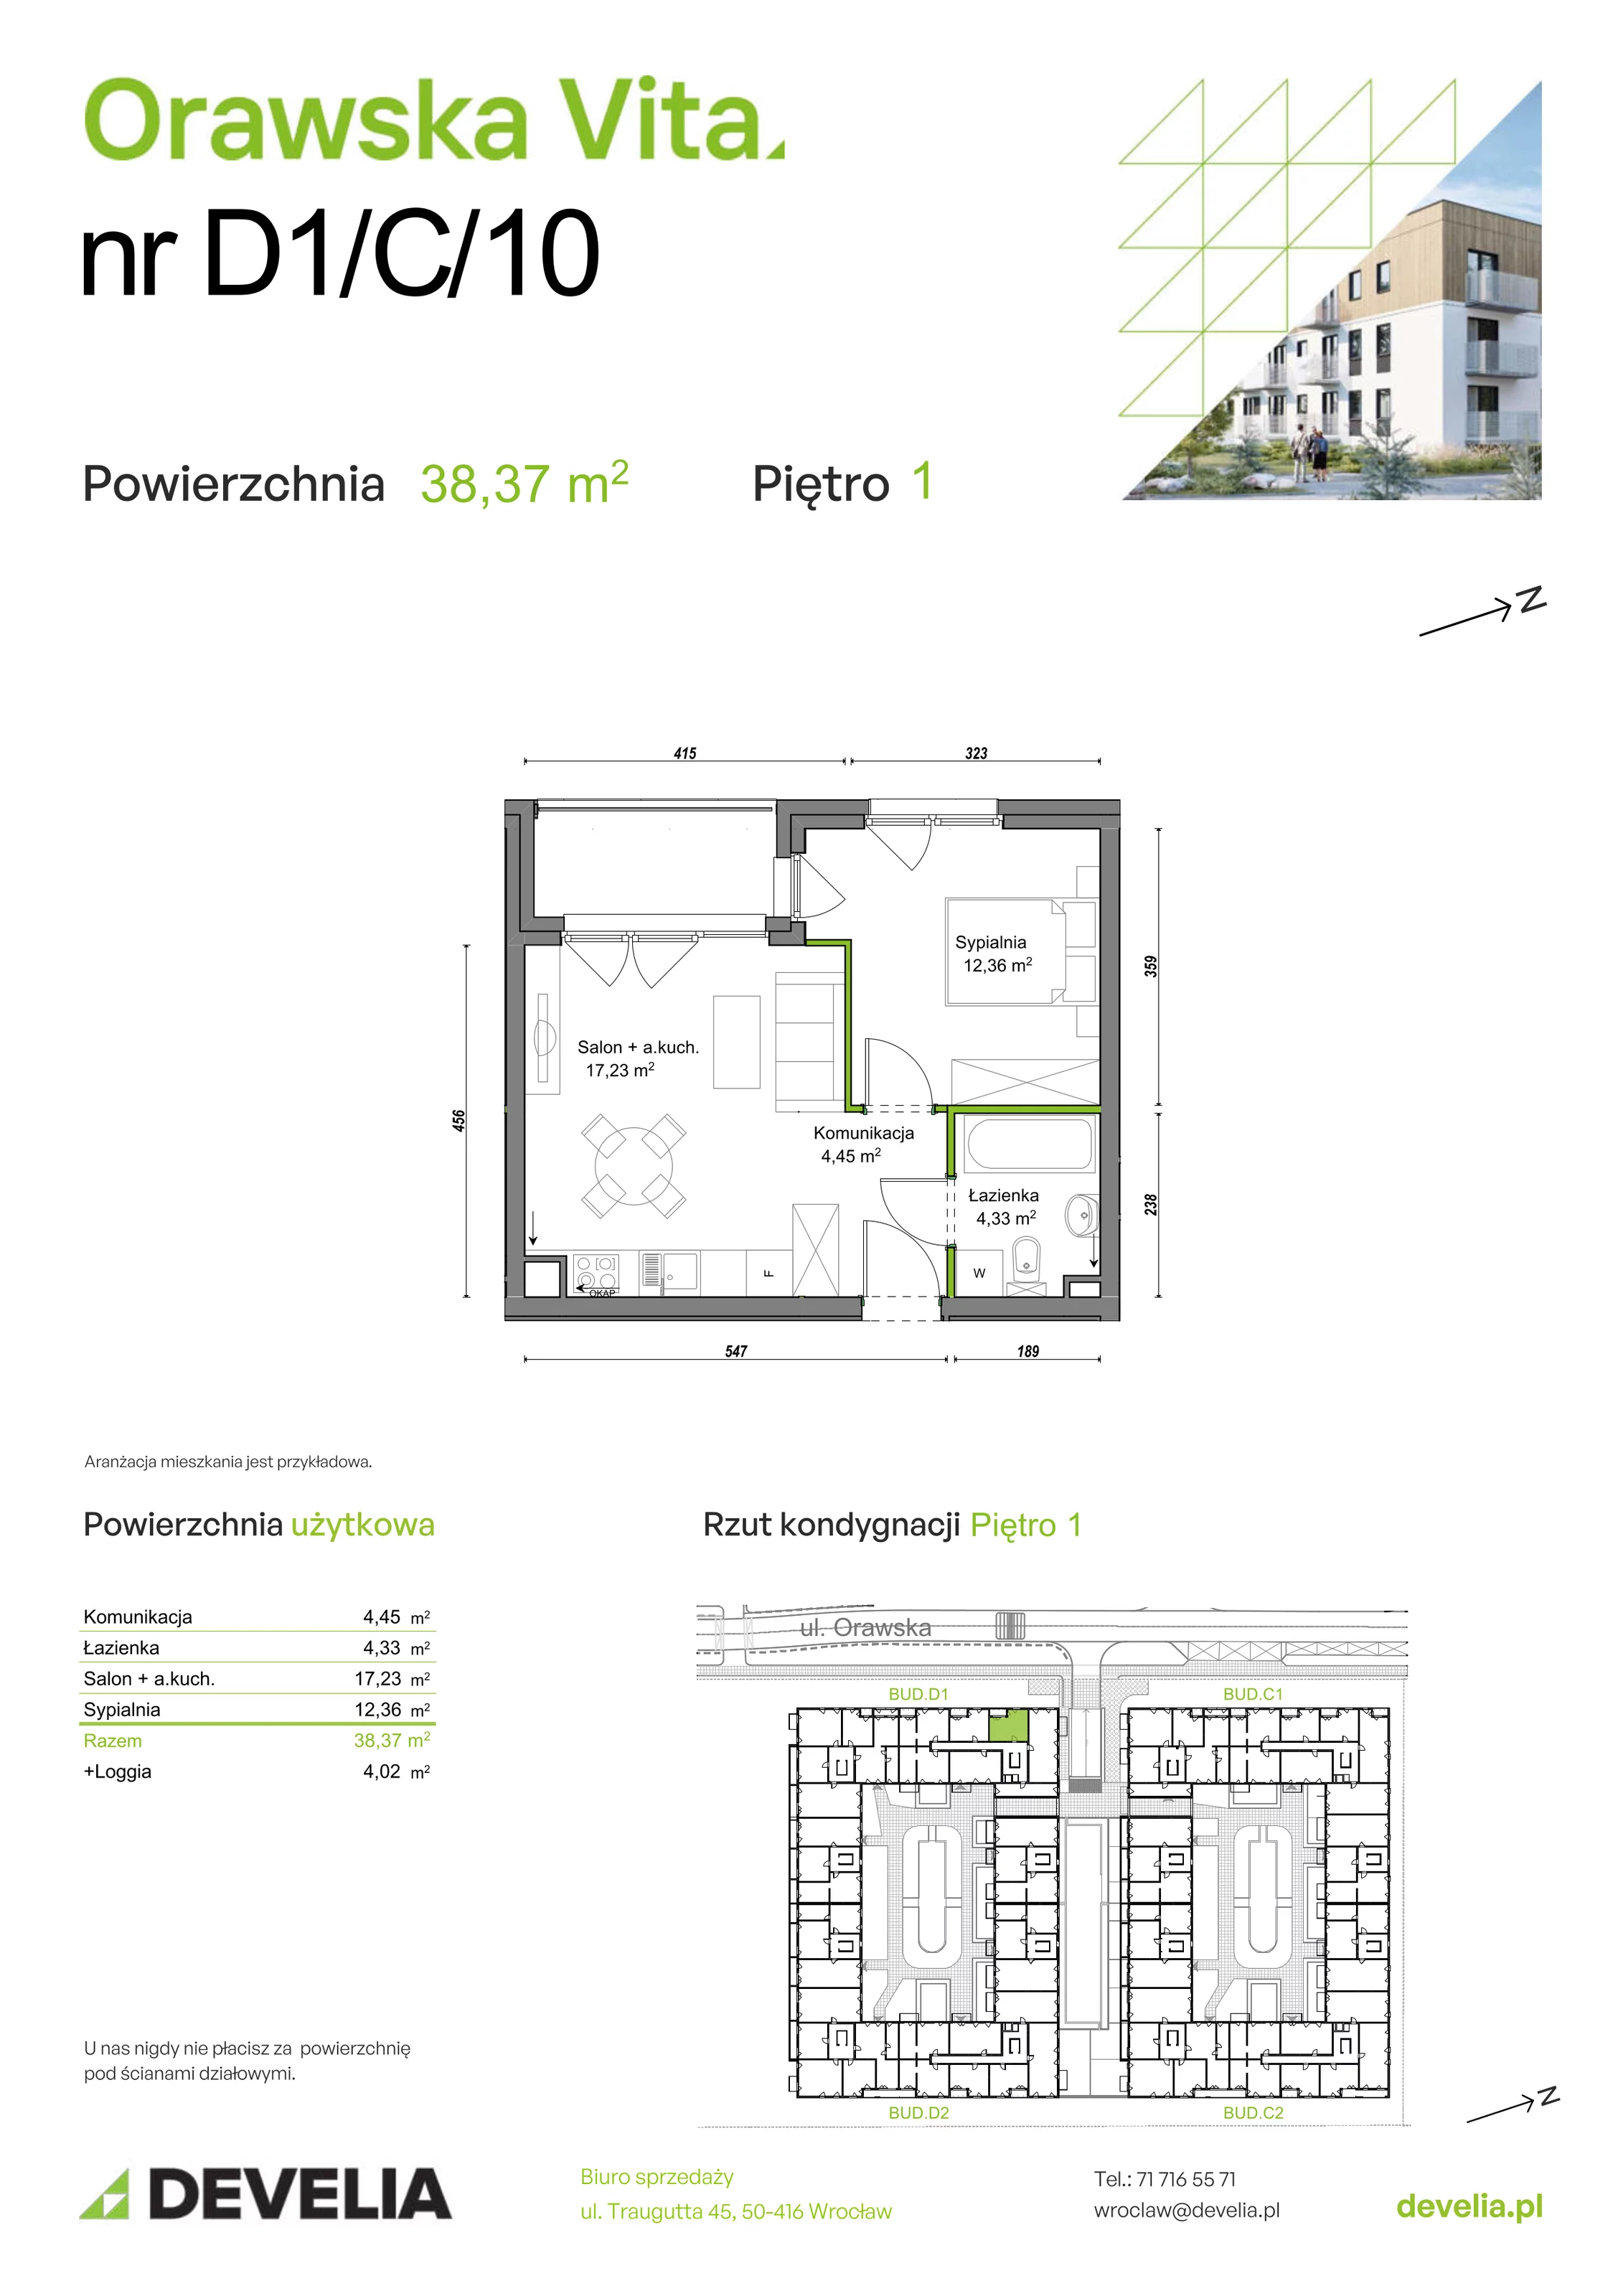 Mieszkanie 38,37 m², piętro 1, oferta nr D1/C/10, Orawska Vita, Wrocław, Ołtaszyn, Krzyki, ul. Orawska 73